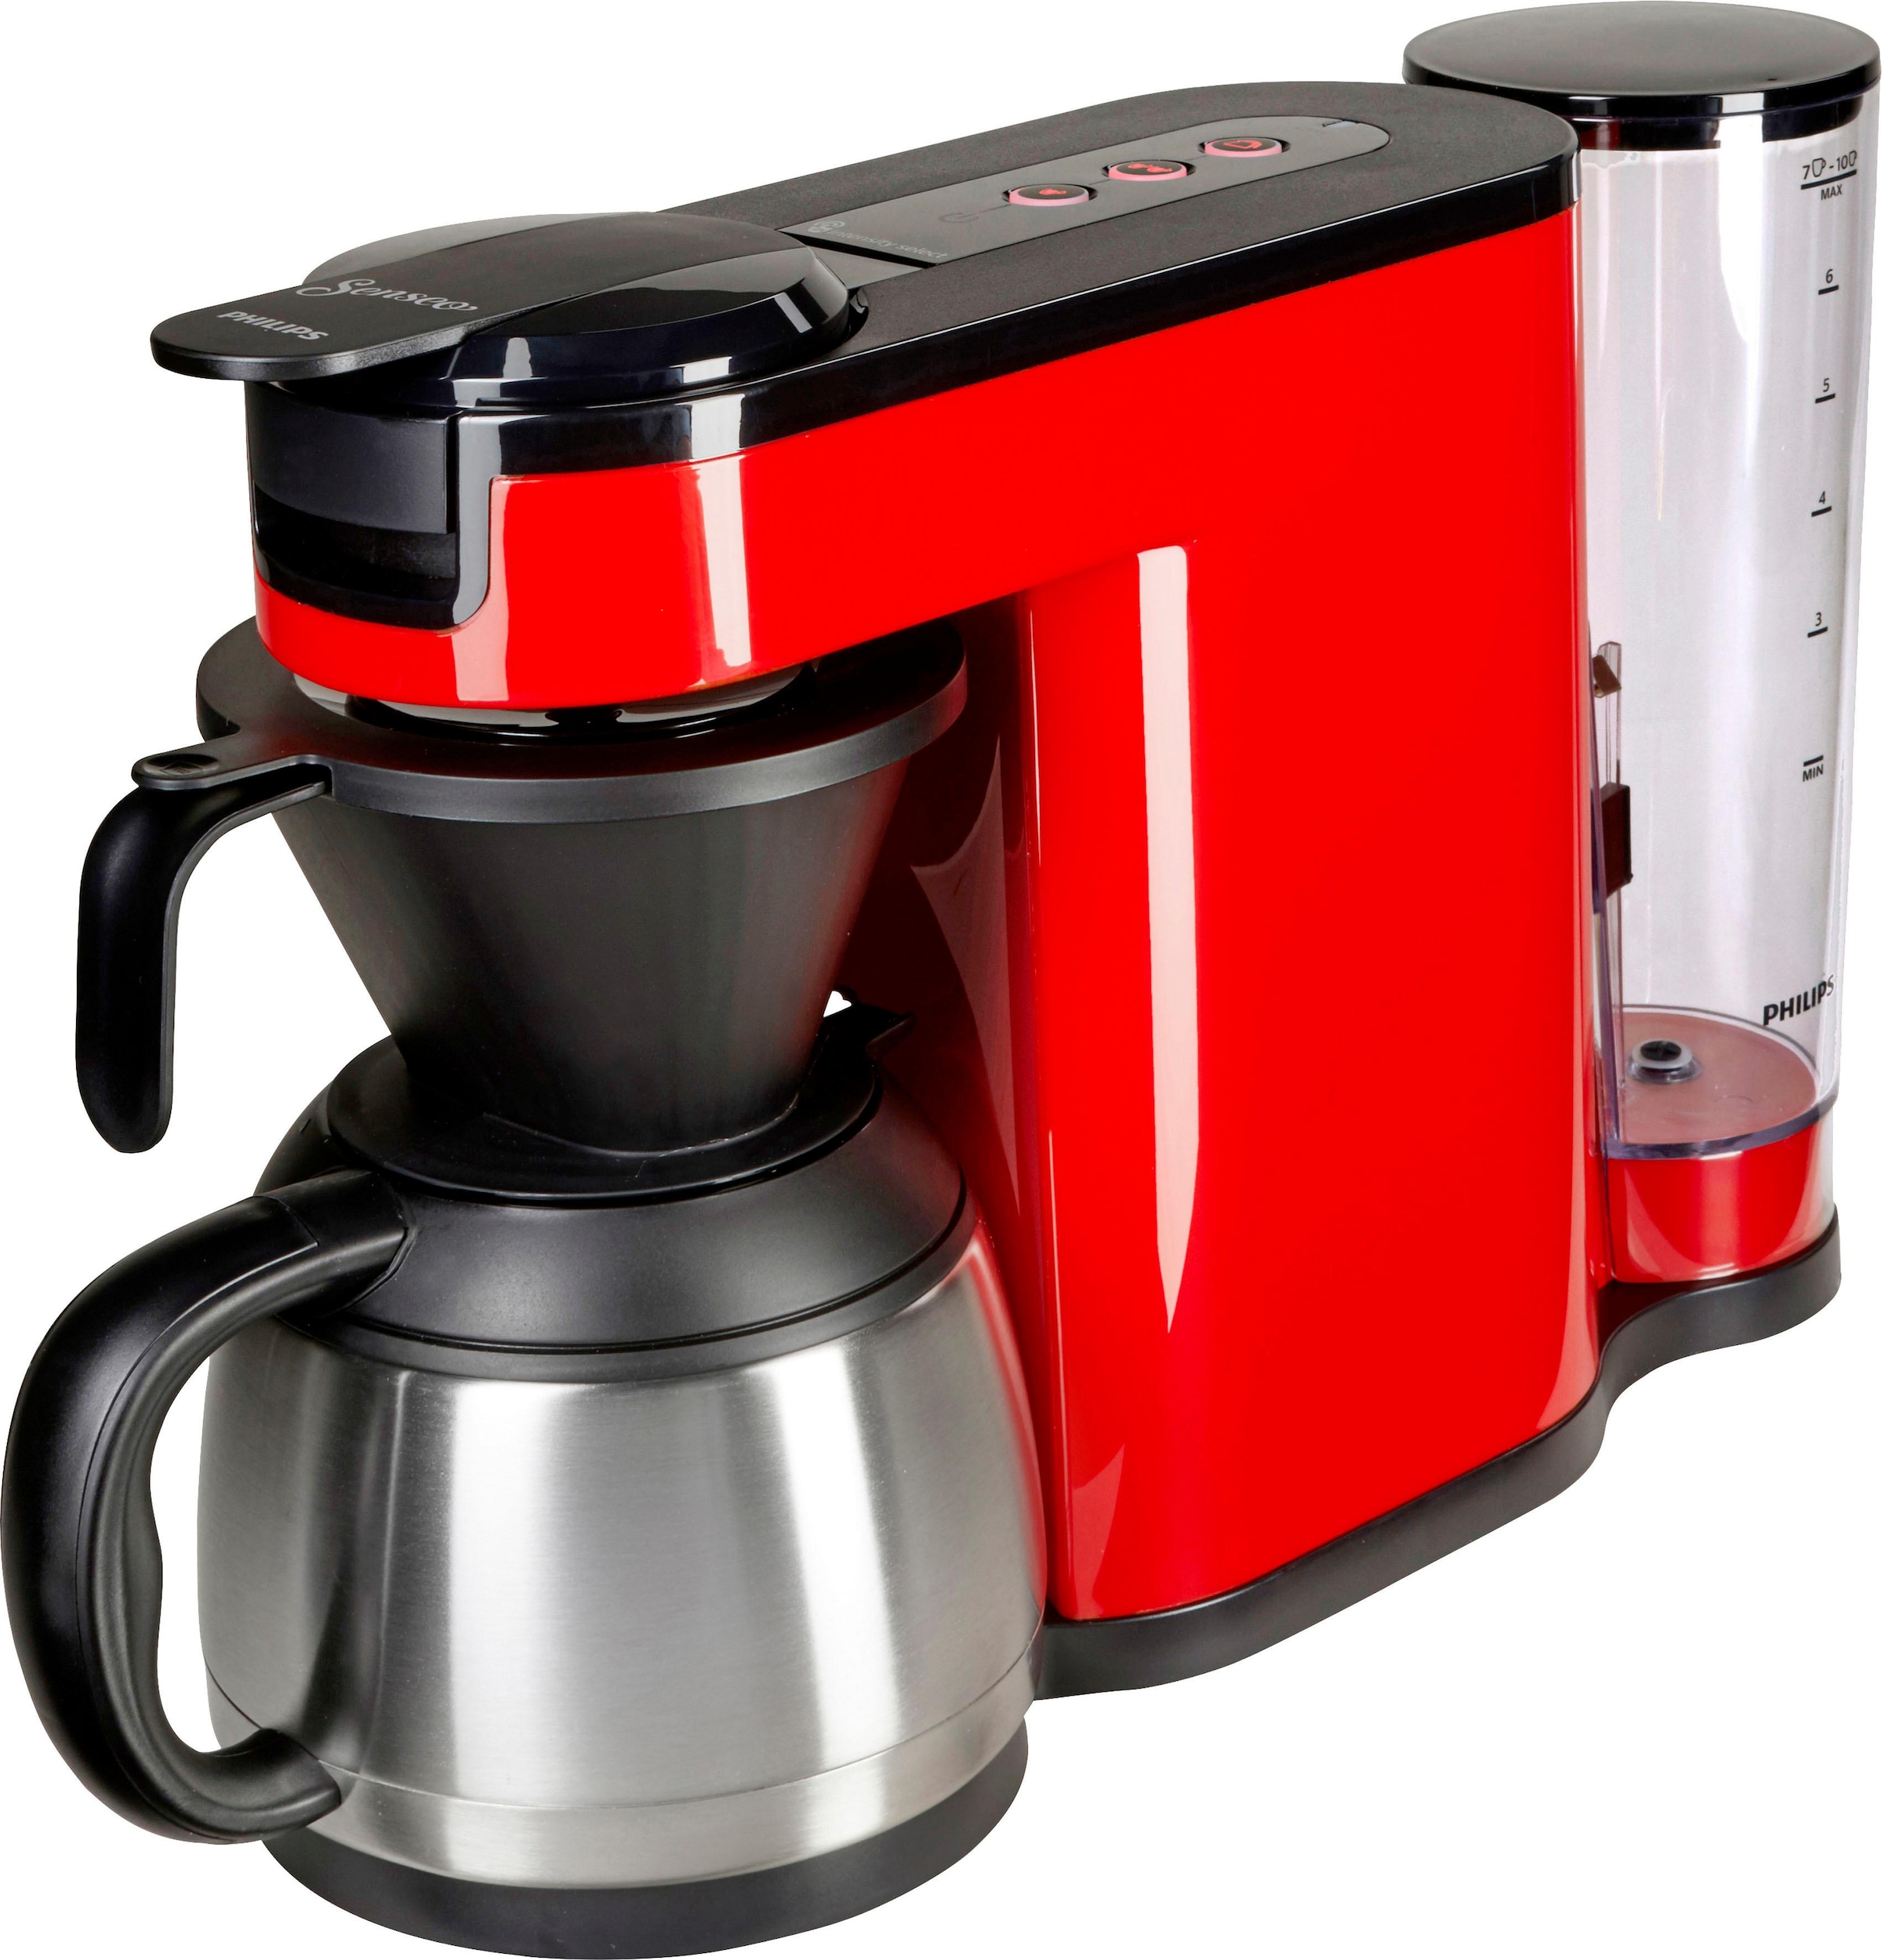 Philips Senseo Kaffeepadmaschine »SENSEO® Switch von Kaffeepaddose Wert 1 9,90 HD6592/80«, im € OTTO bestellen Papierfilter, Kaffeekanne, UVP l jetzt bei